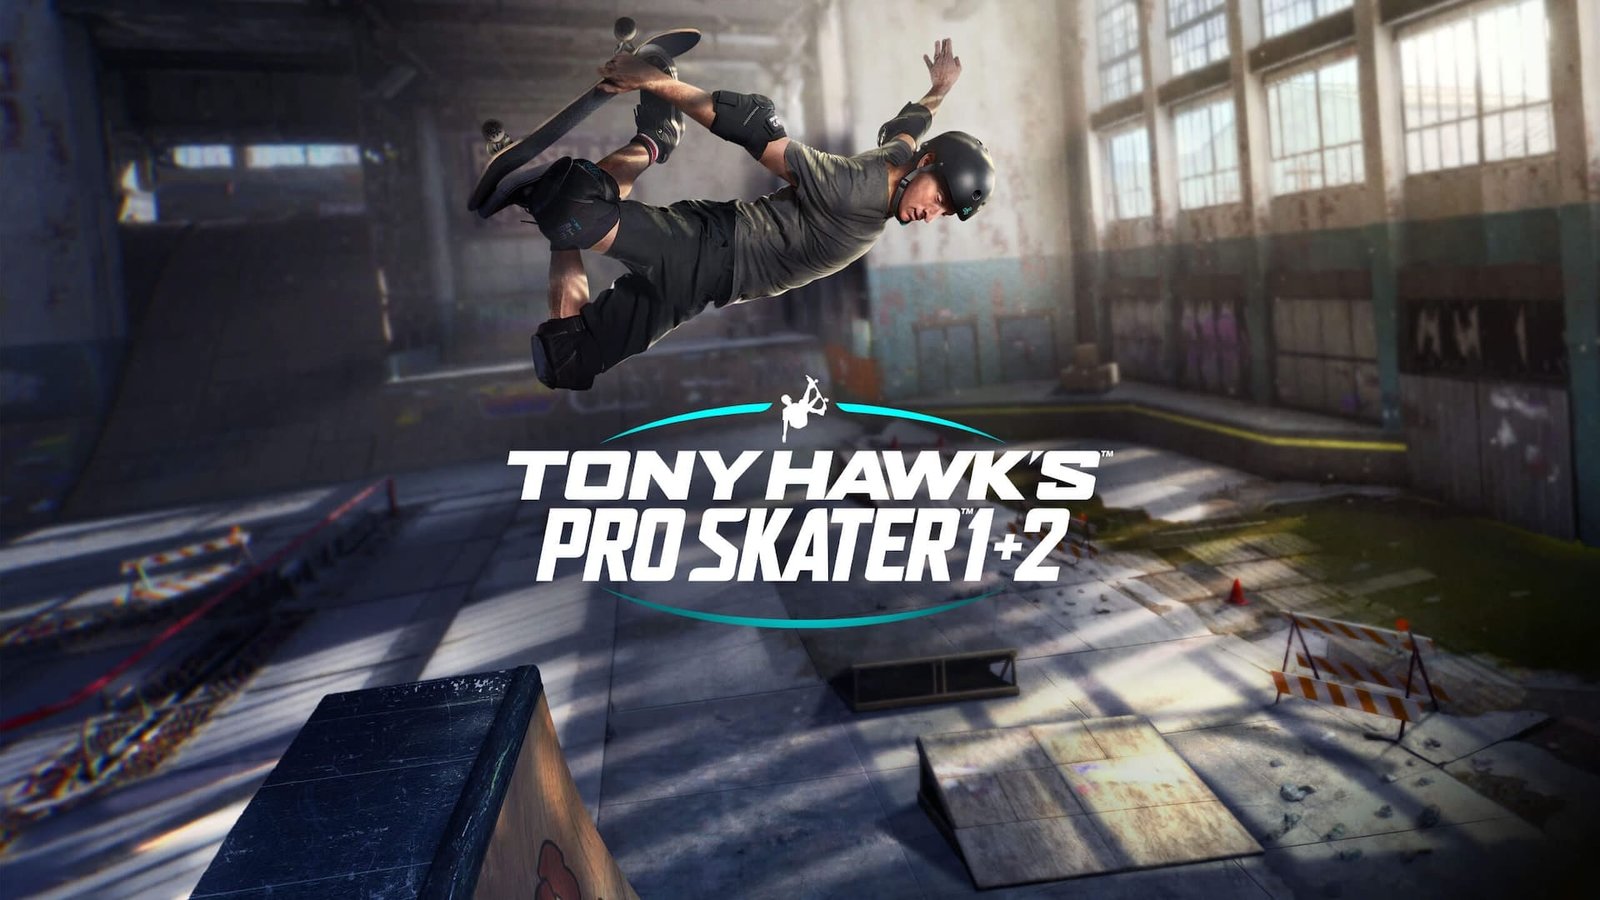 Tony hawk pro skater 1 and 2